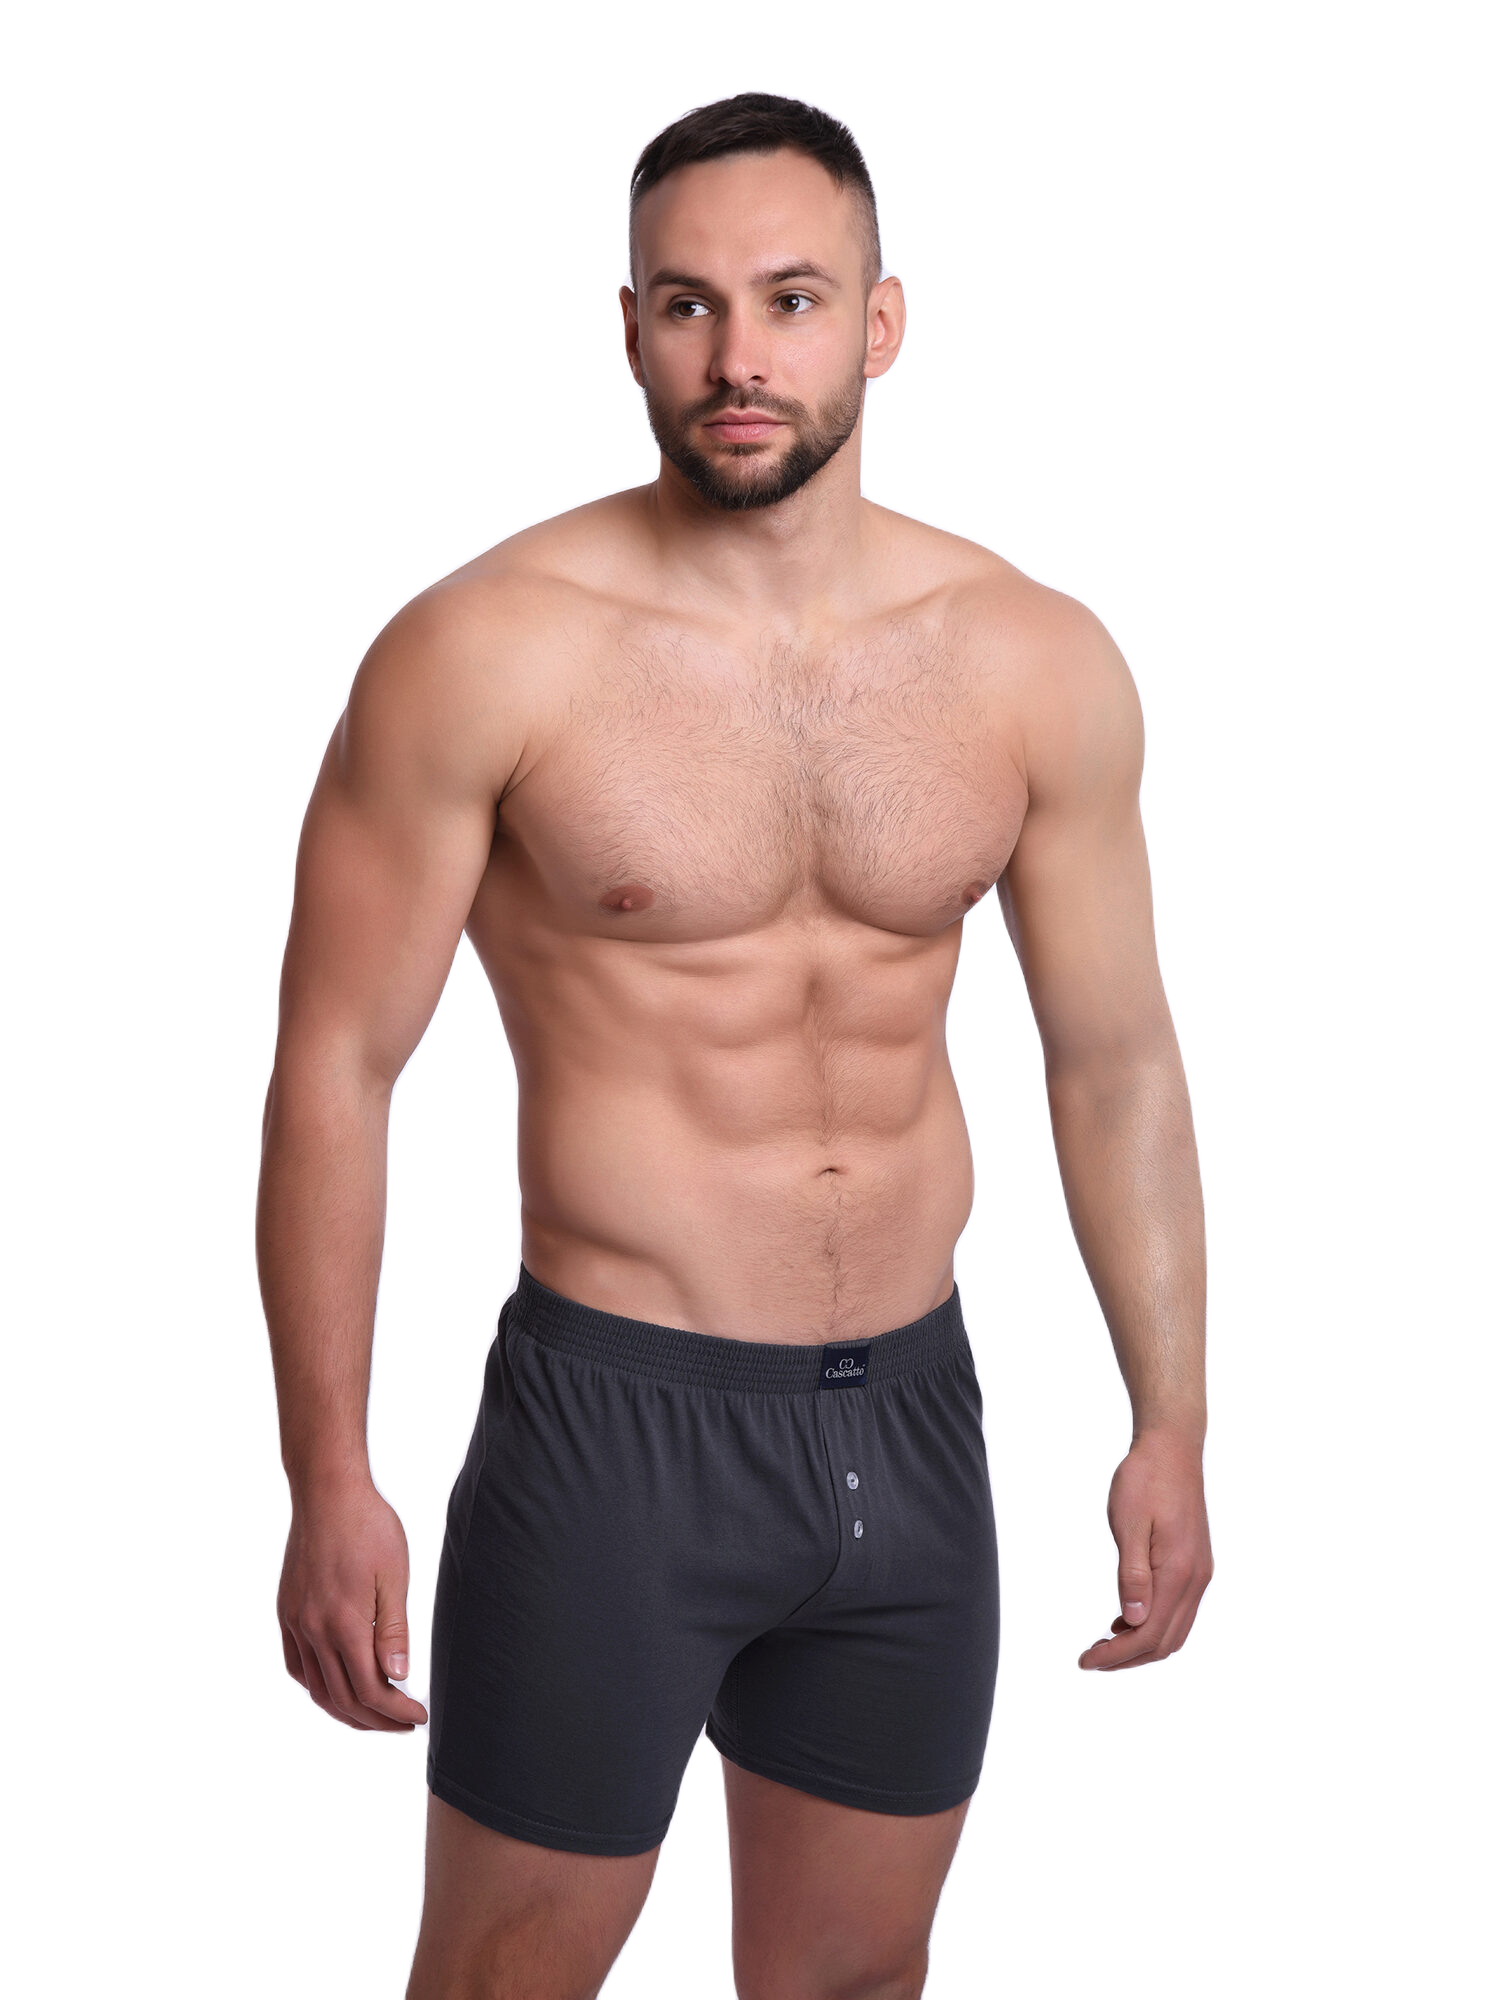 Трусы Cascatto шорты для мужчин, тёмно-серый, размер XL, MSH1803